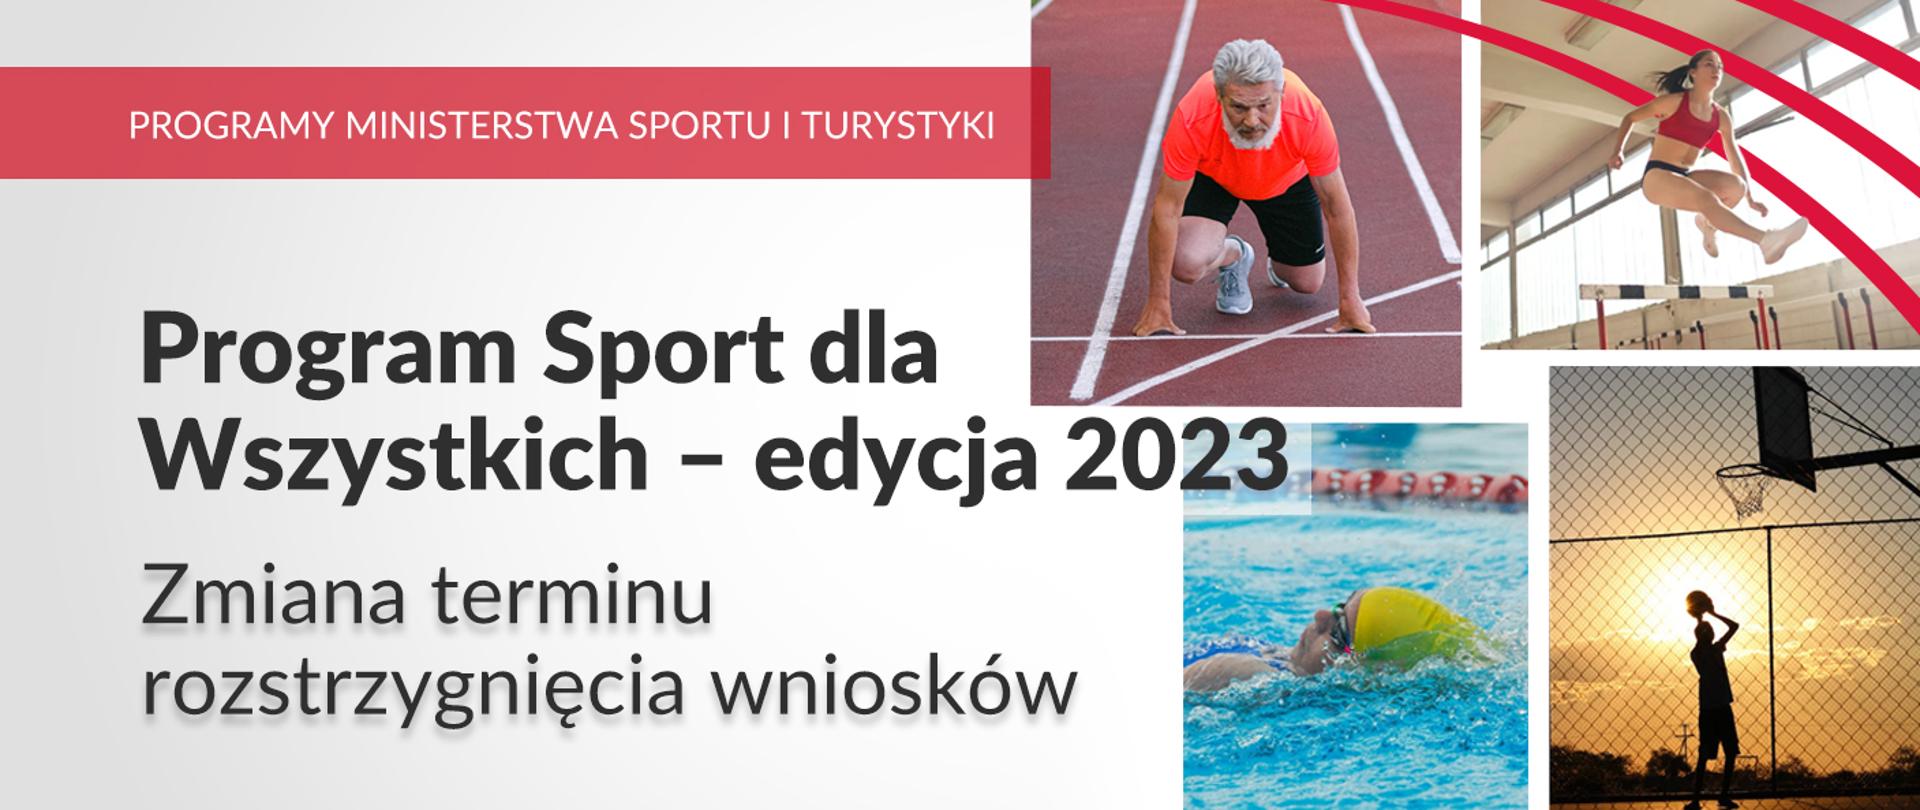 Program Sport dla Wszystkich - edycja 2023, zmiana terminu rozstrzygnięcia wniosków; grafika ze zdjęciami różnego sposobu uprawiania sportu